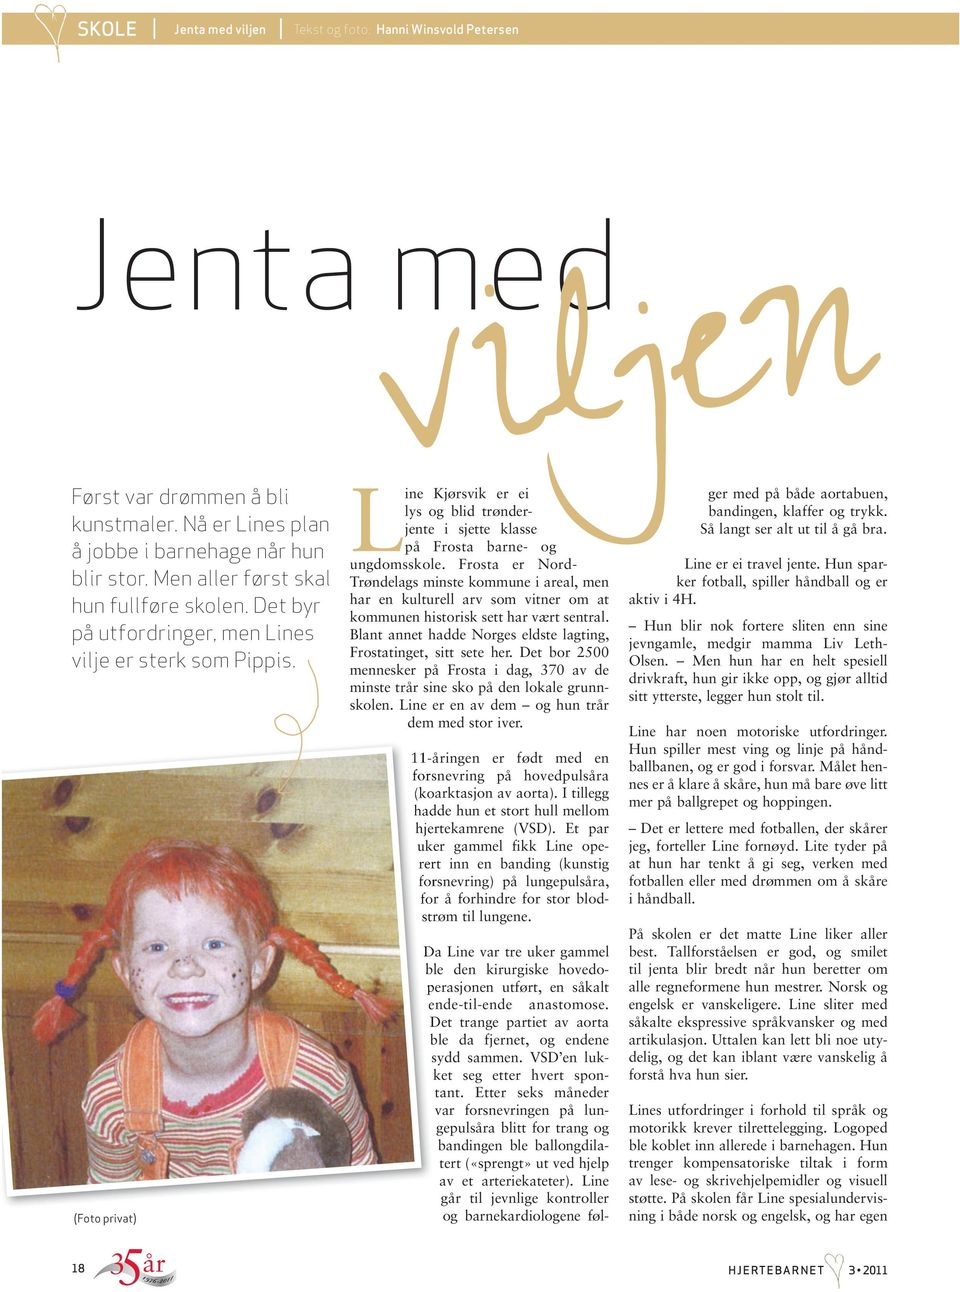 (Foto privat) Line Kjørsvik er ei lys og blid trønderjente i sjette klasse på Frosta barne- og ungdomsskole.